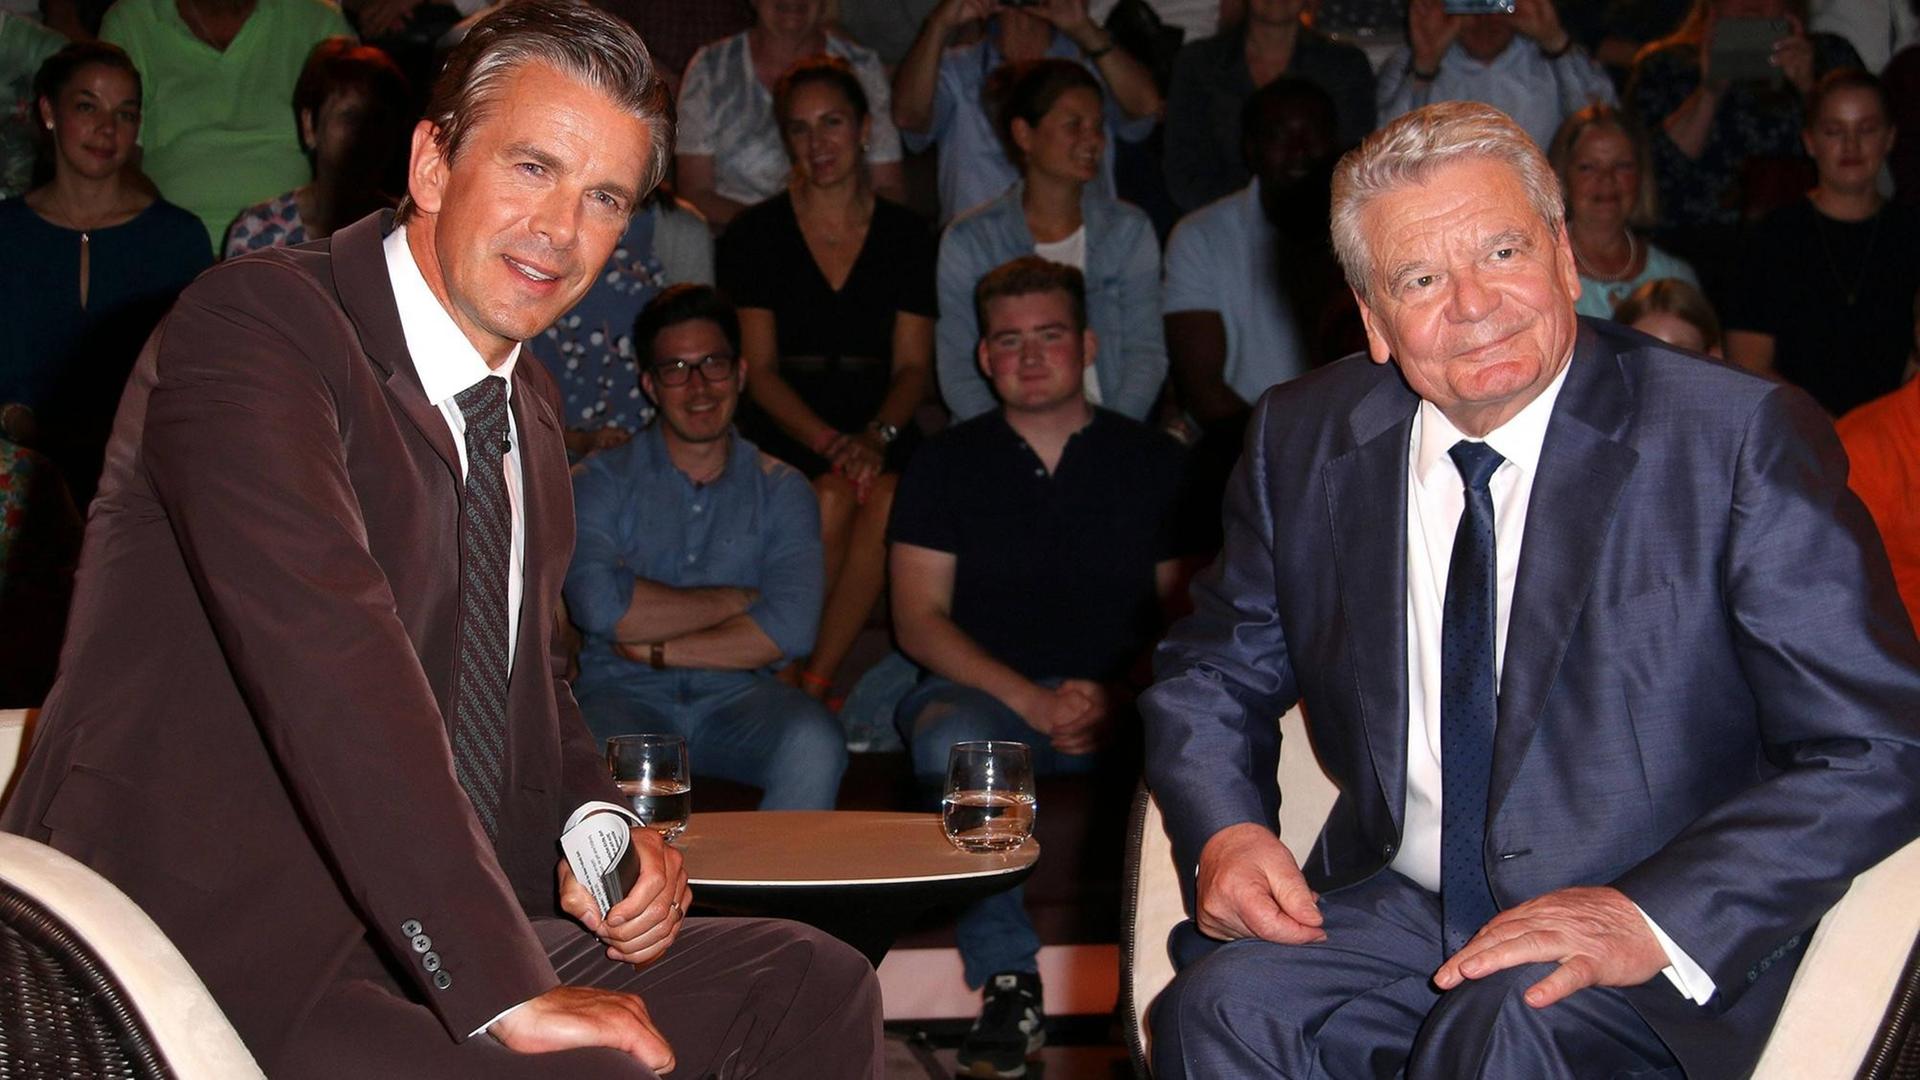 Markus Lanz mit Joachim Gauck in der Talkshow "Markus Lanz" am 19.06.2019 in Hamburg